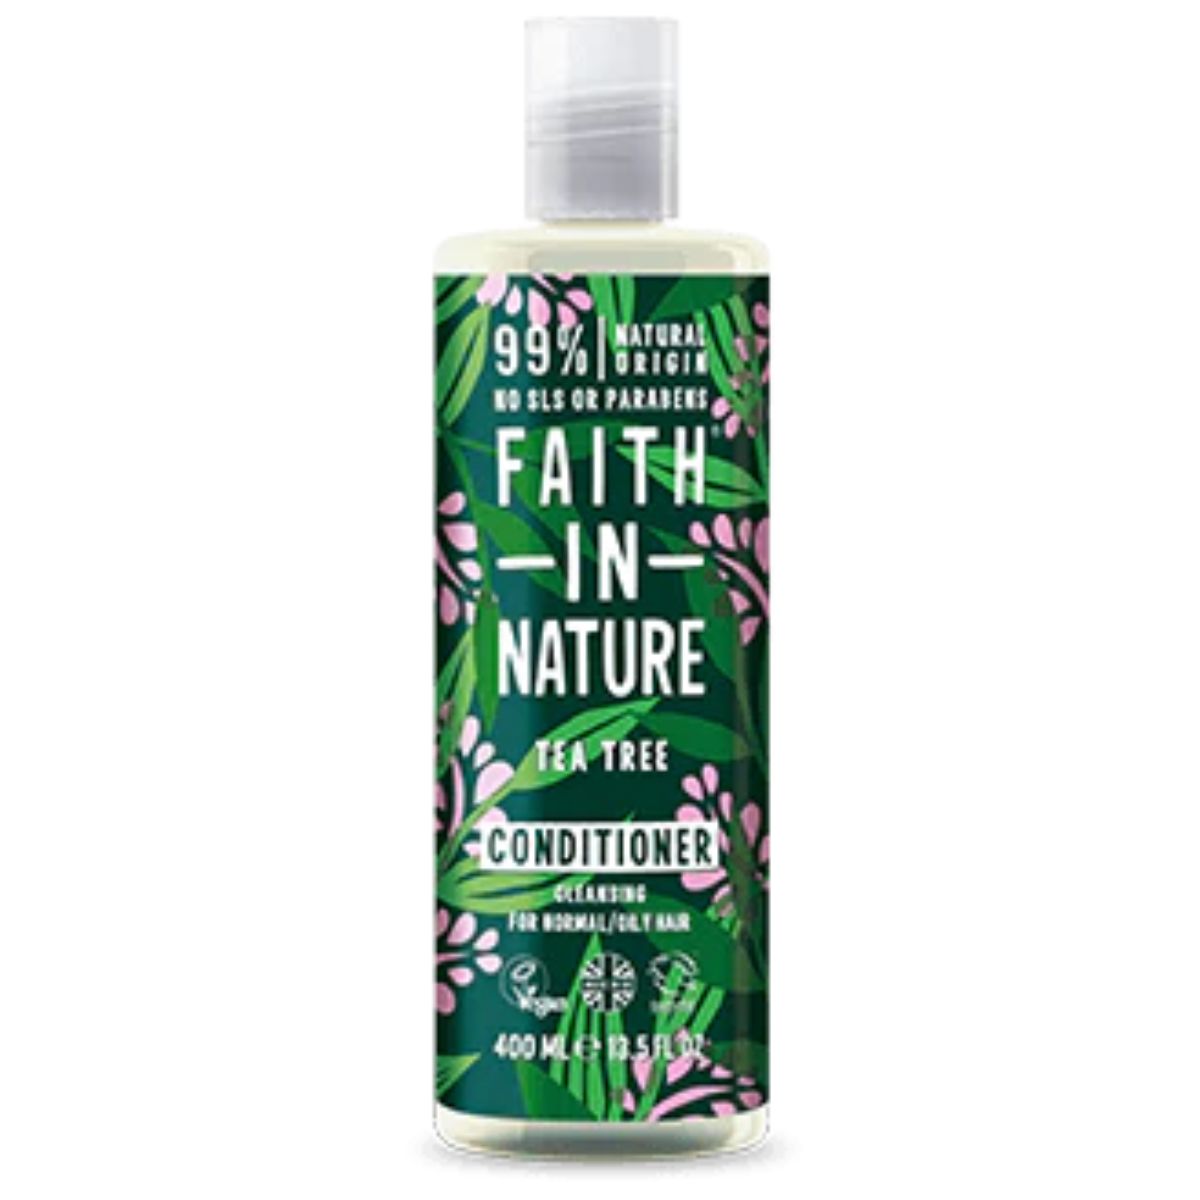 Faith In Nature Tea Tree Conditioner - 400ml